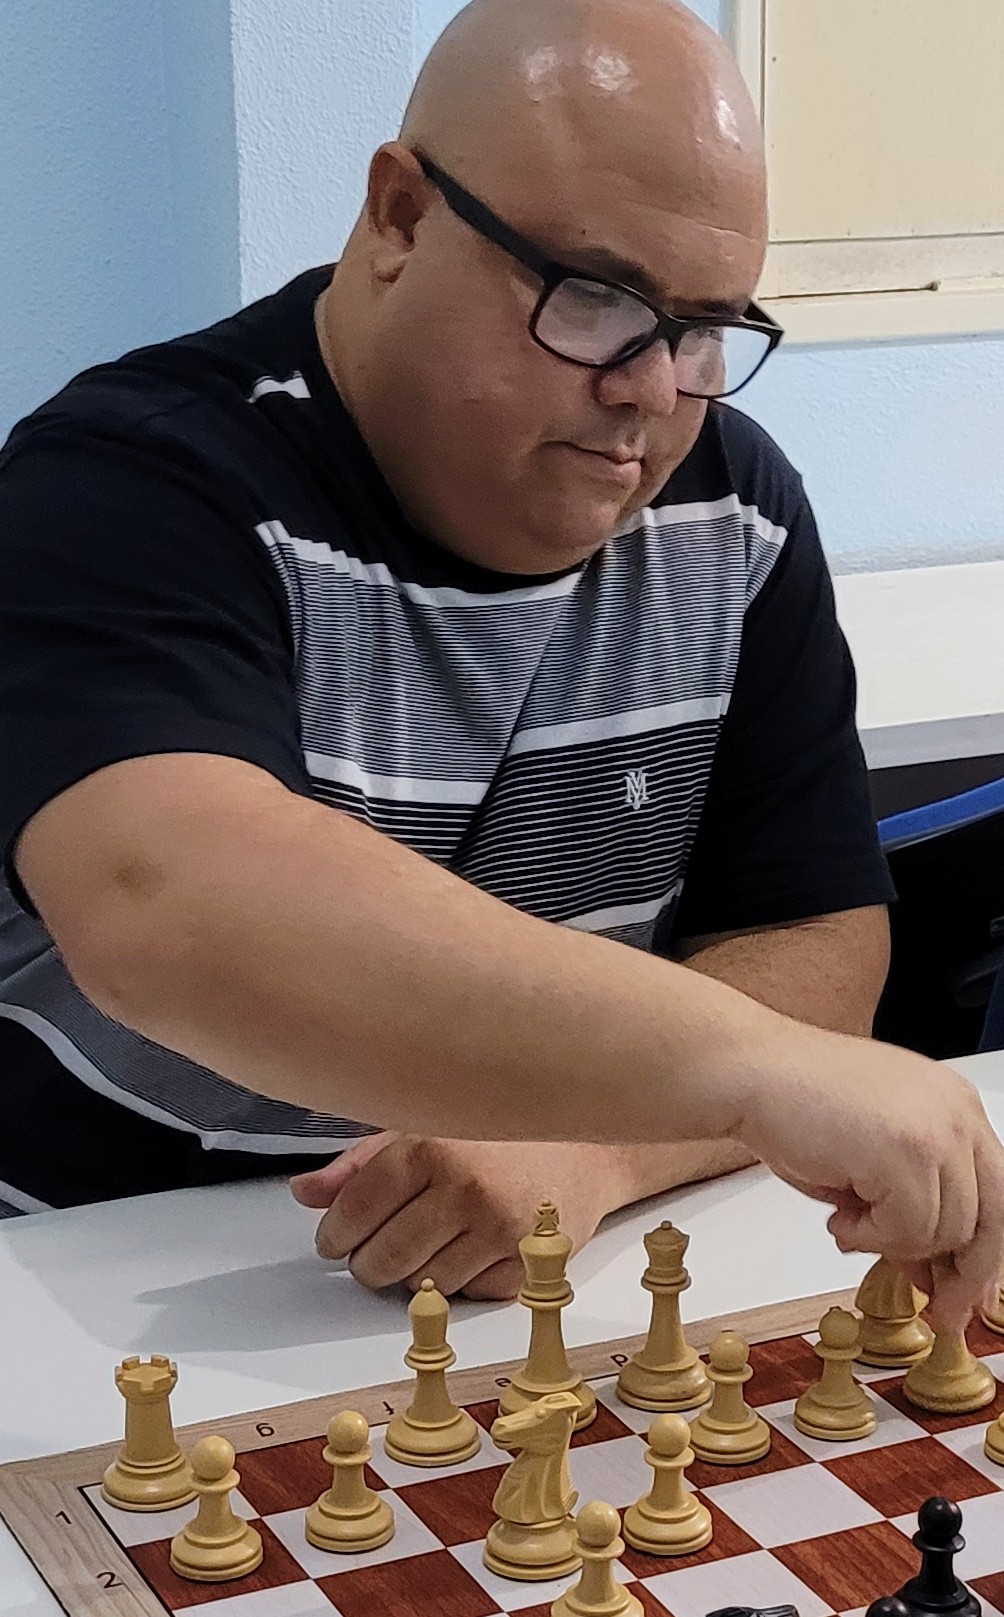 CAXA - Clube Arapiraquense de xadrez